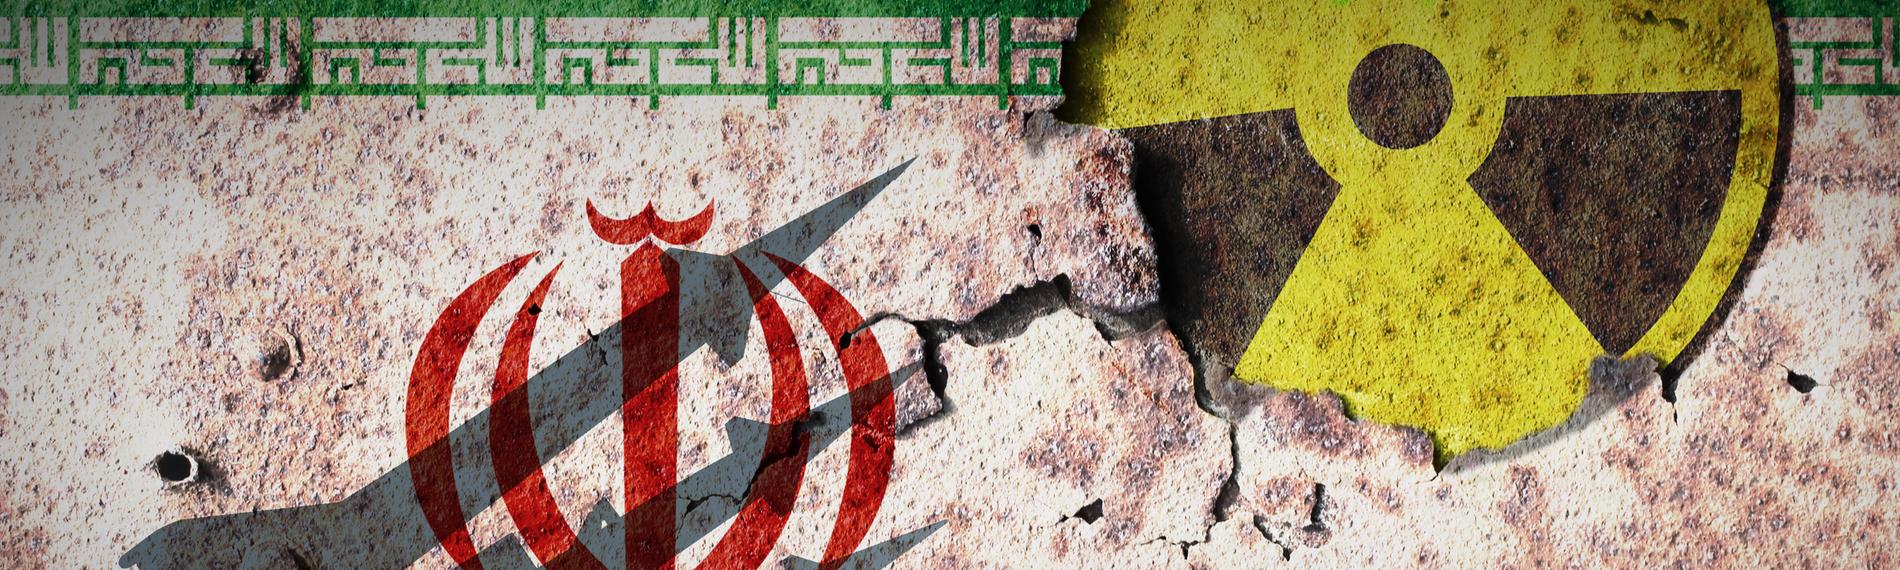 Montage: Die Flagge des Iran auf einer Wand, rechts dazu das Zeichen für Radioaktivität. Als Schatten auf der Wand mehrere militärische Raketen.